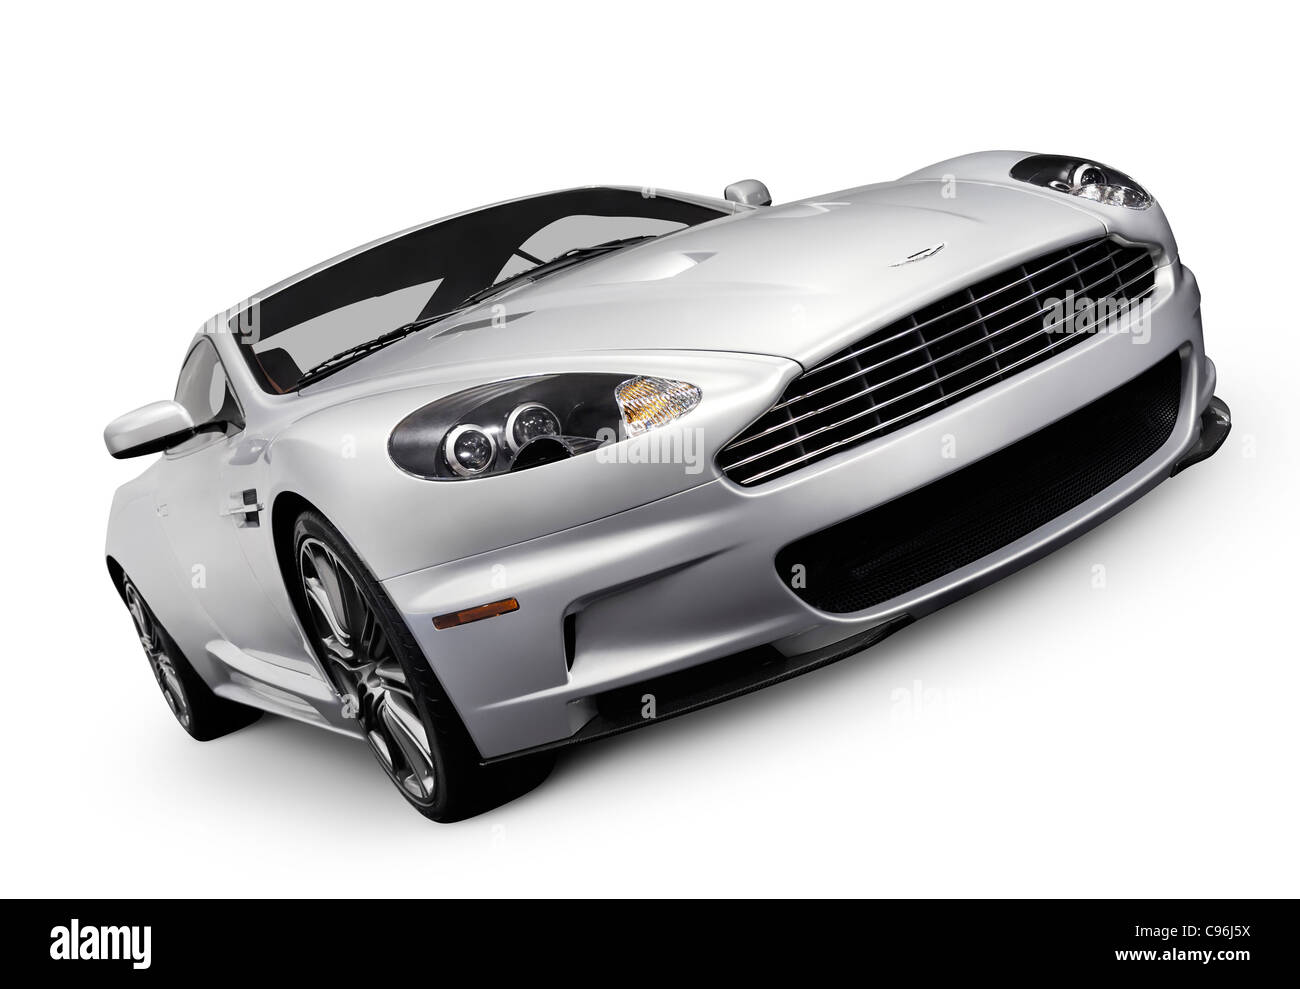 Lizenz und Drucke bei MaximImages.com - Aston Martin Luxus-Sportwagen, Automobil Stock Foto. Stockfoto